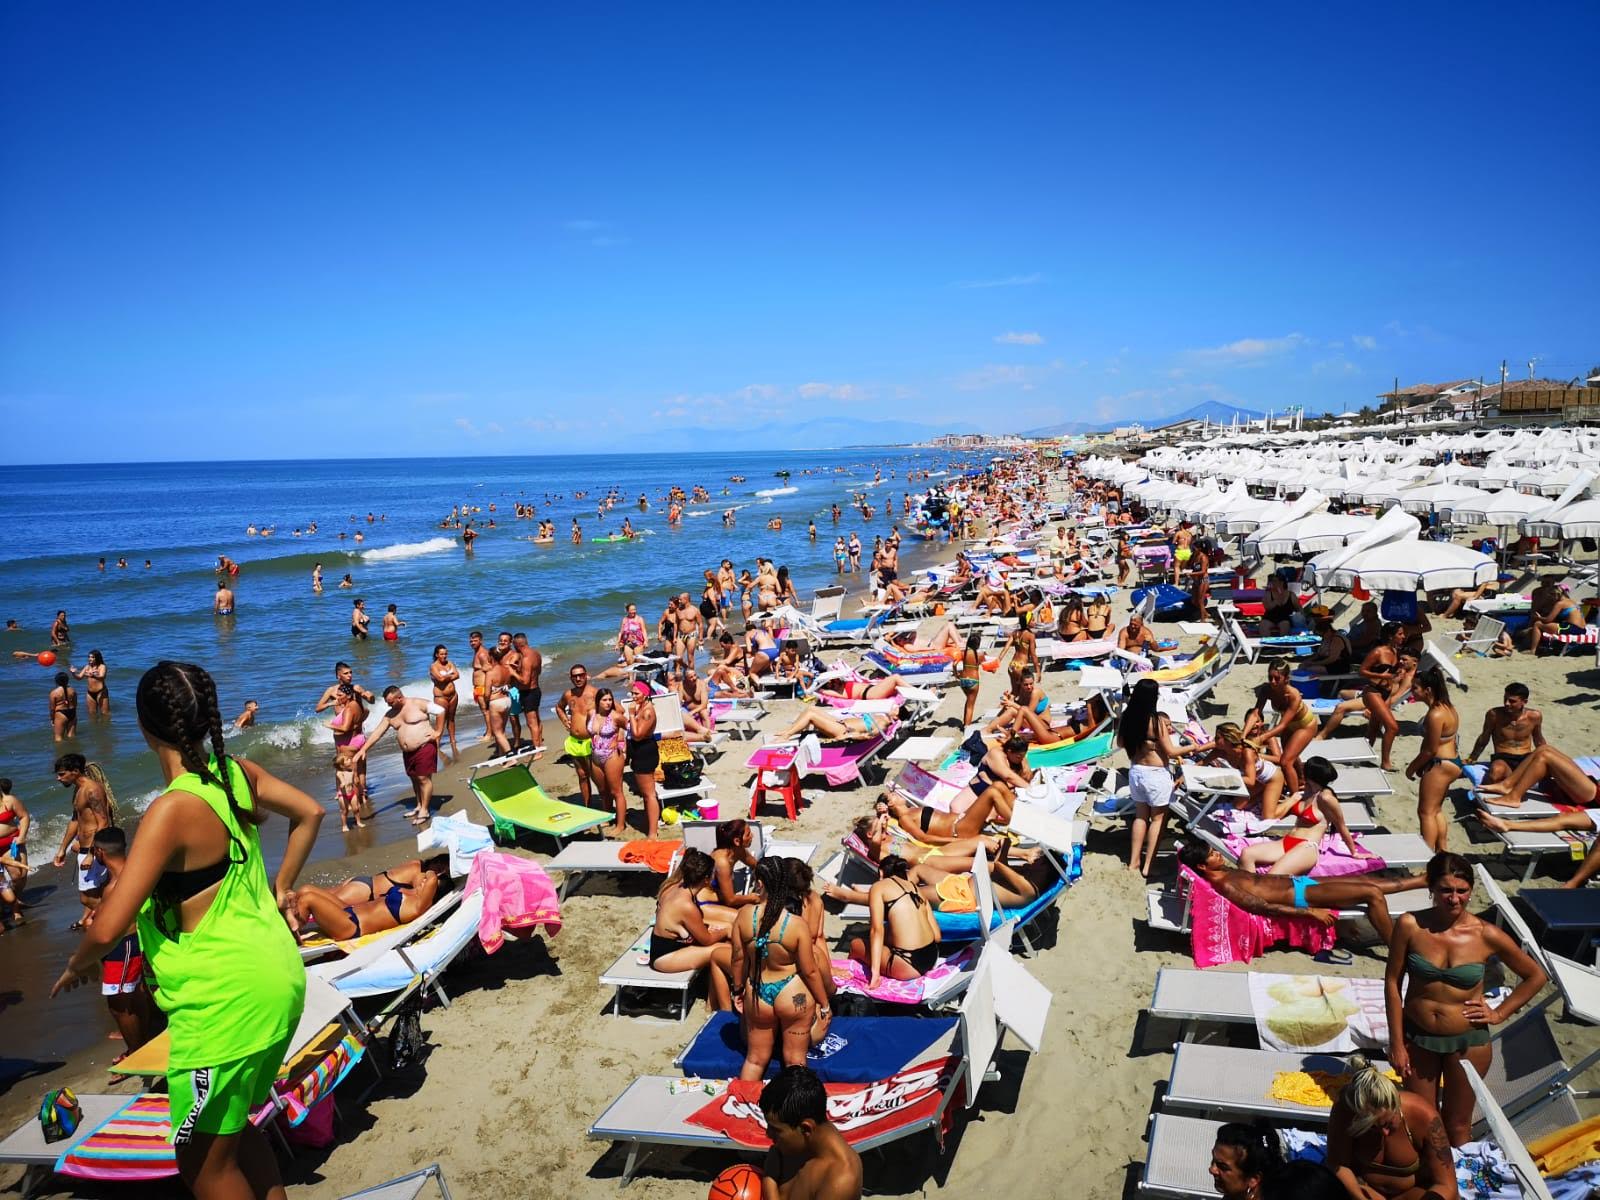 Ischitella beach'in fotoğrafı - rahatlamayı sevenler arasında popüler bir yer